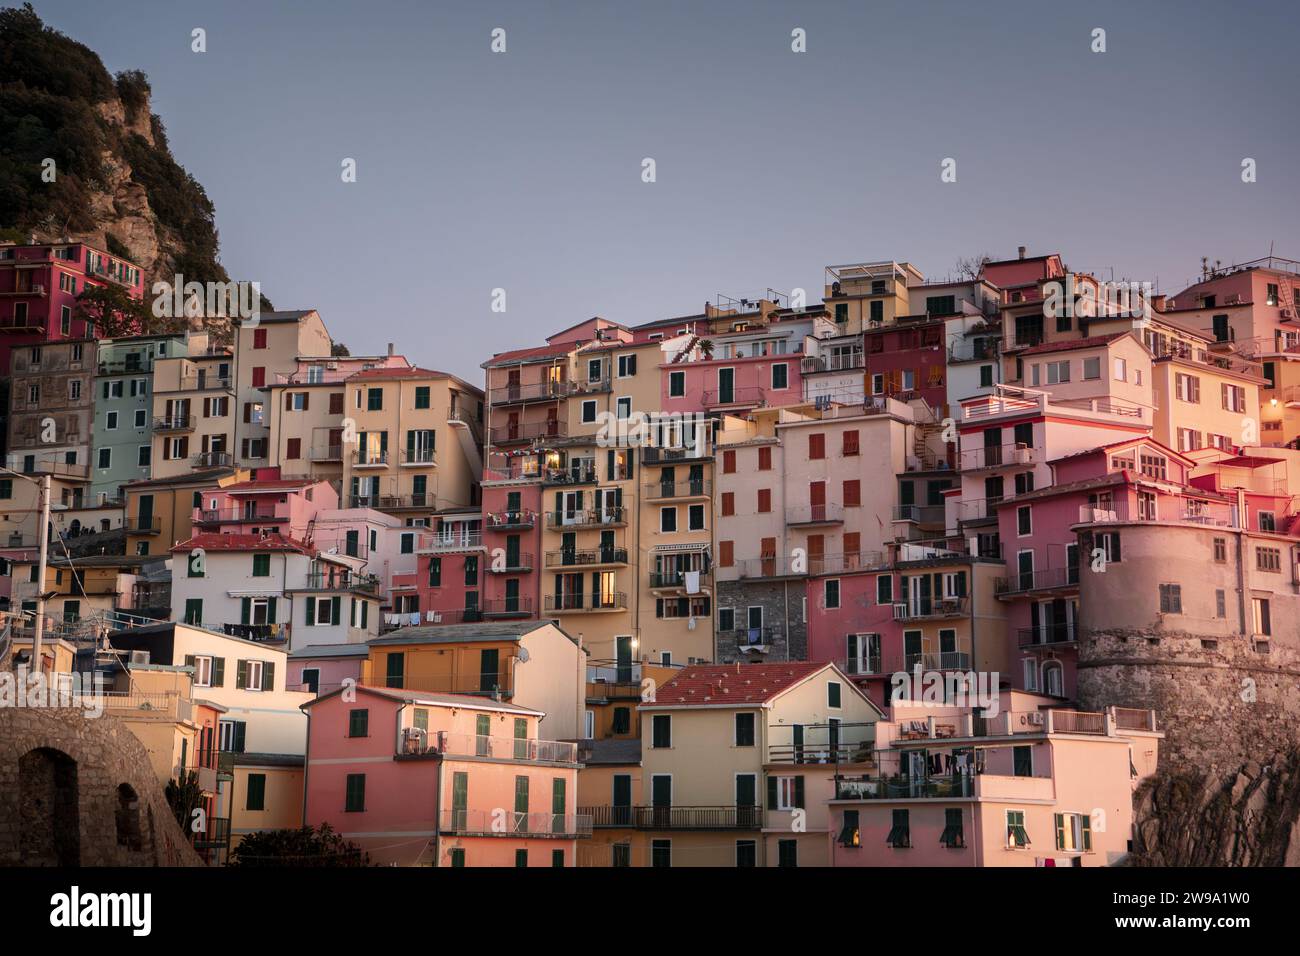 Eine malerische Reihe von Häusern in verschiedenen Rosa-Tönen auf einem steilen Hügel in einer malerischen Stadt Stockfoto